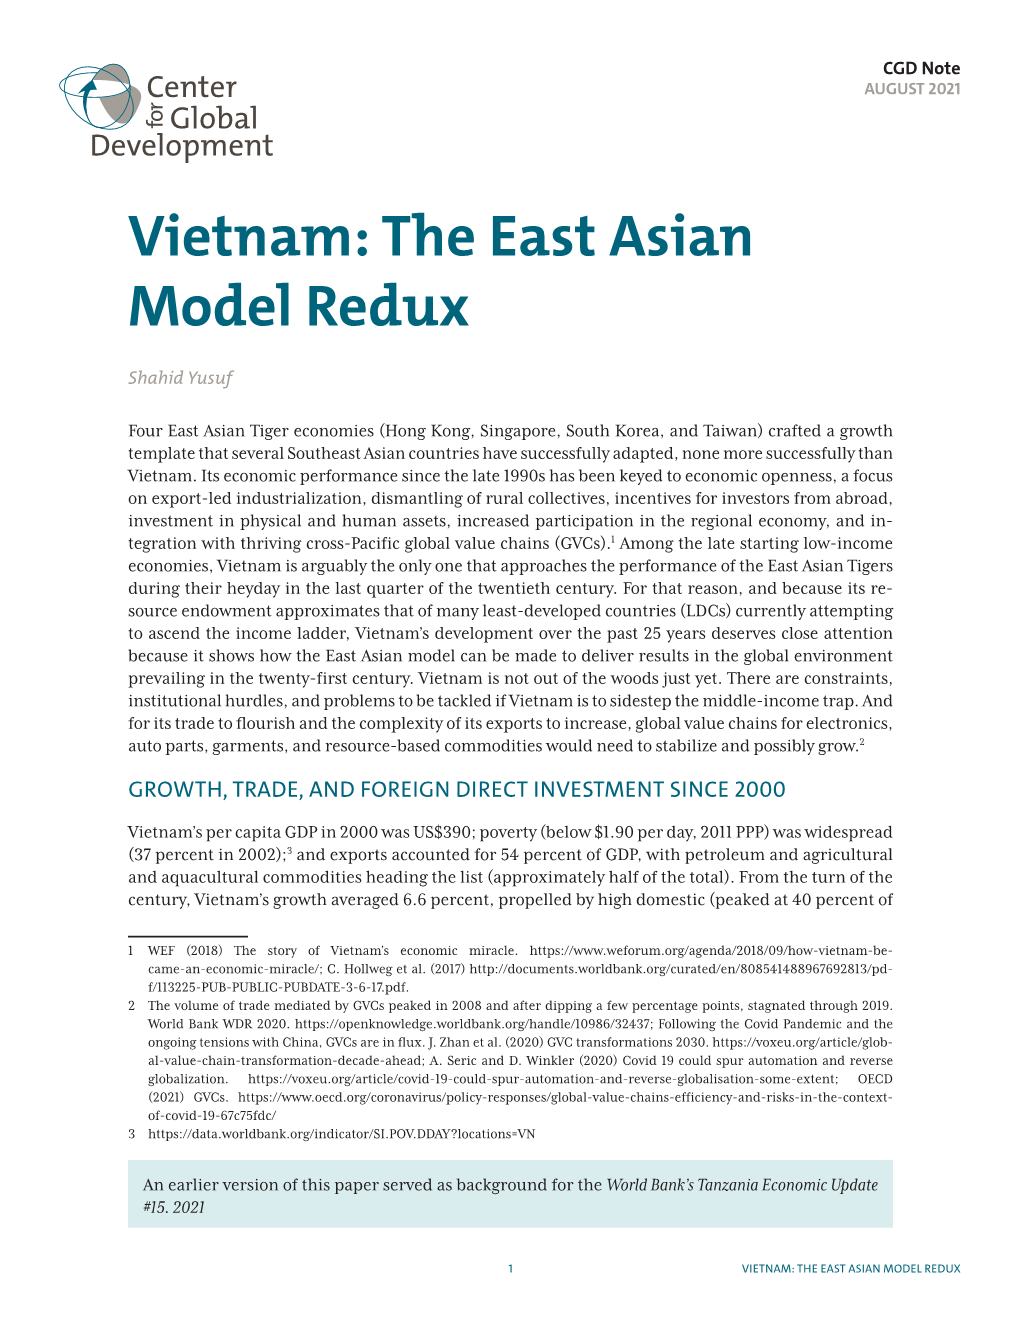 Vietnam: the East Asian Model Redux